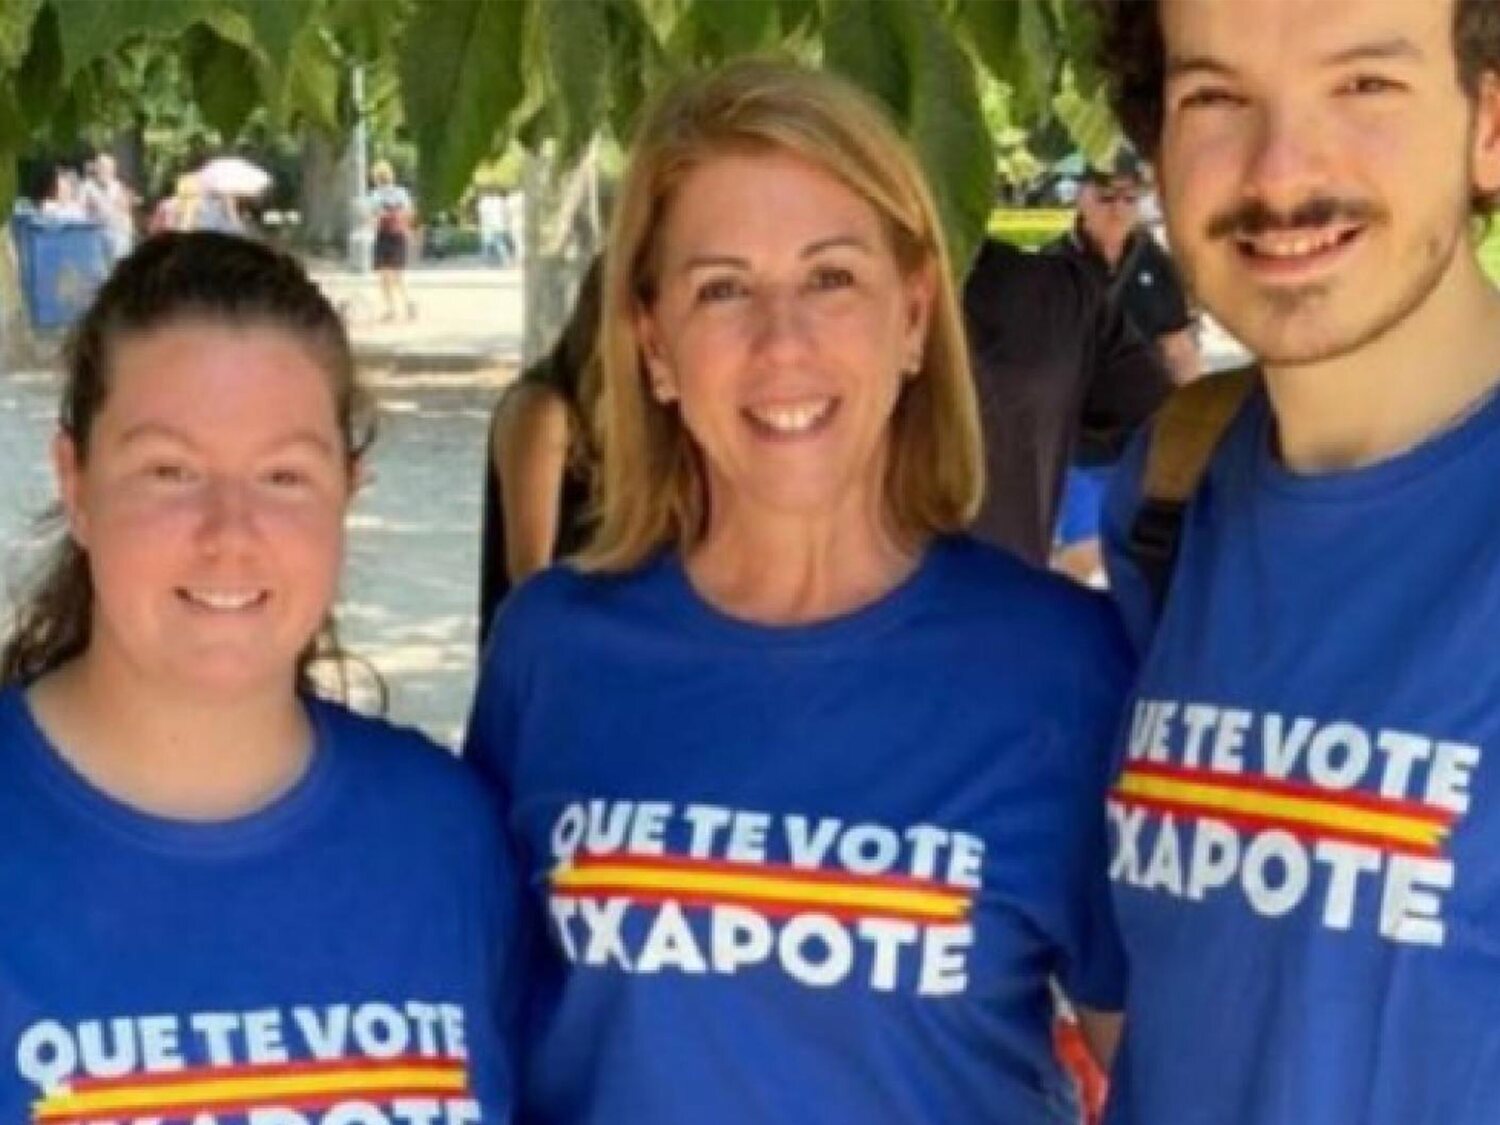 La Junta electoral prohíbe poder votar con camisetas con el lema de 'Que te vote Txapote'